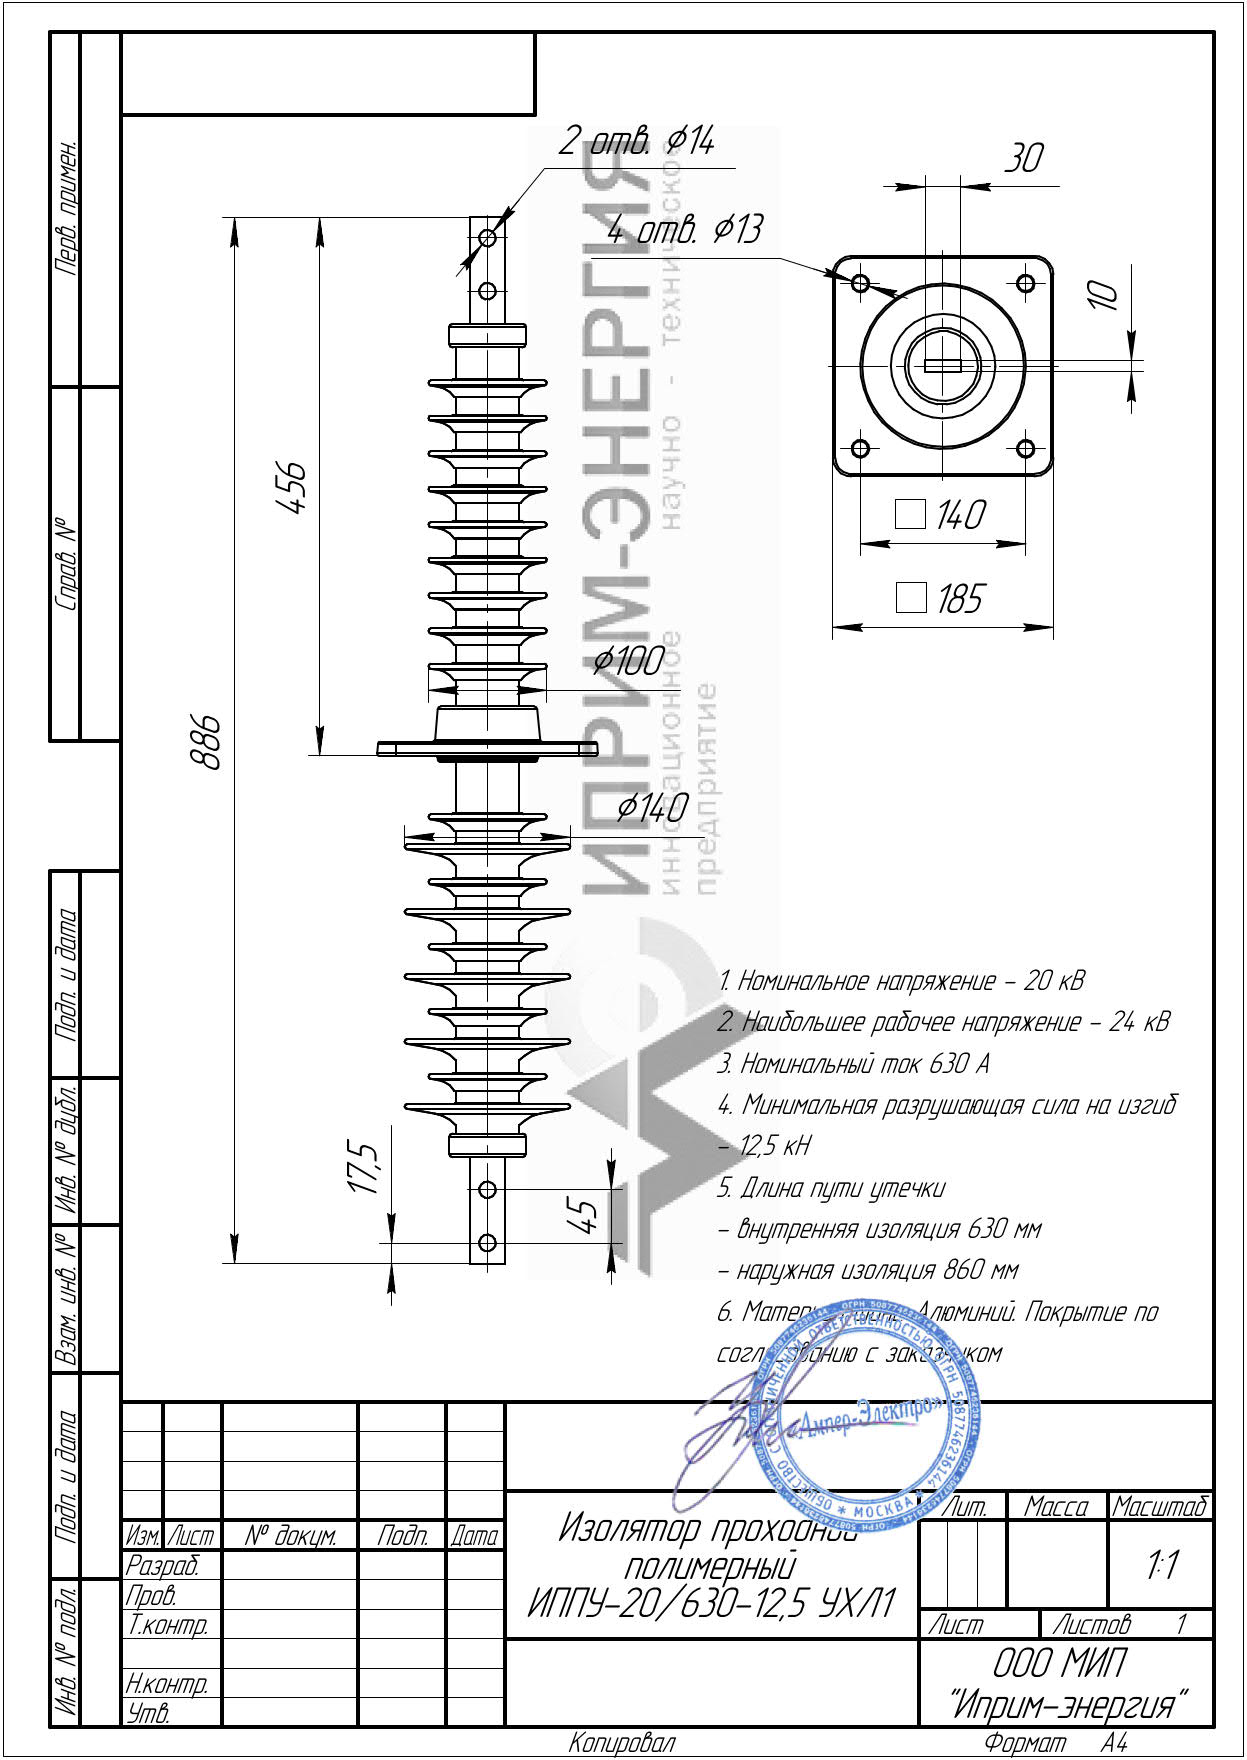 Изолятор проходной полимерный ИППУ-20/630-12,5 УХЛ1 чертеж